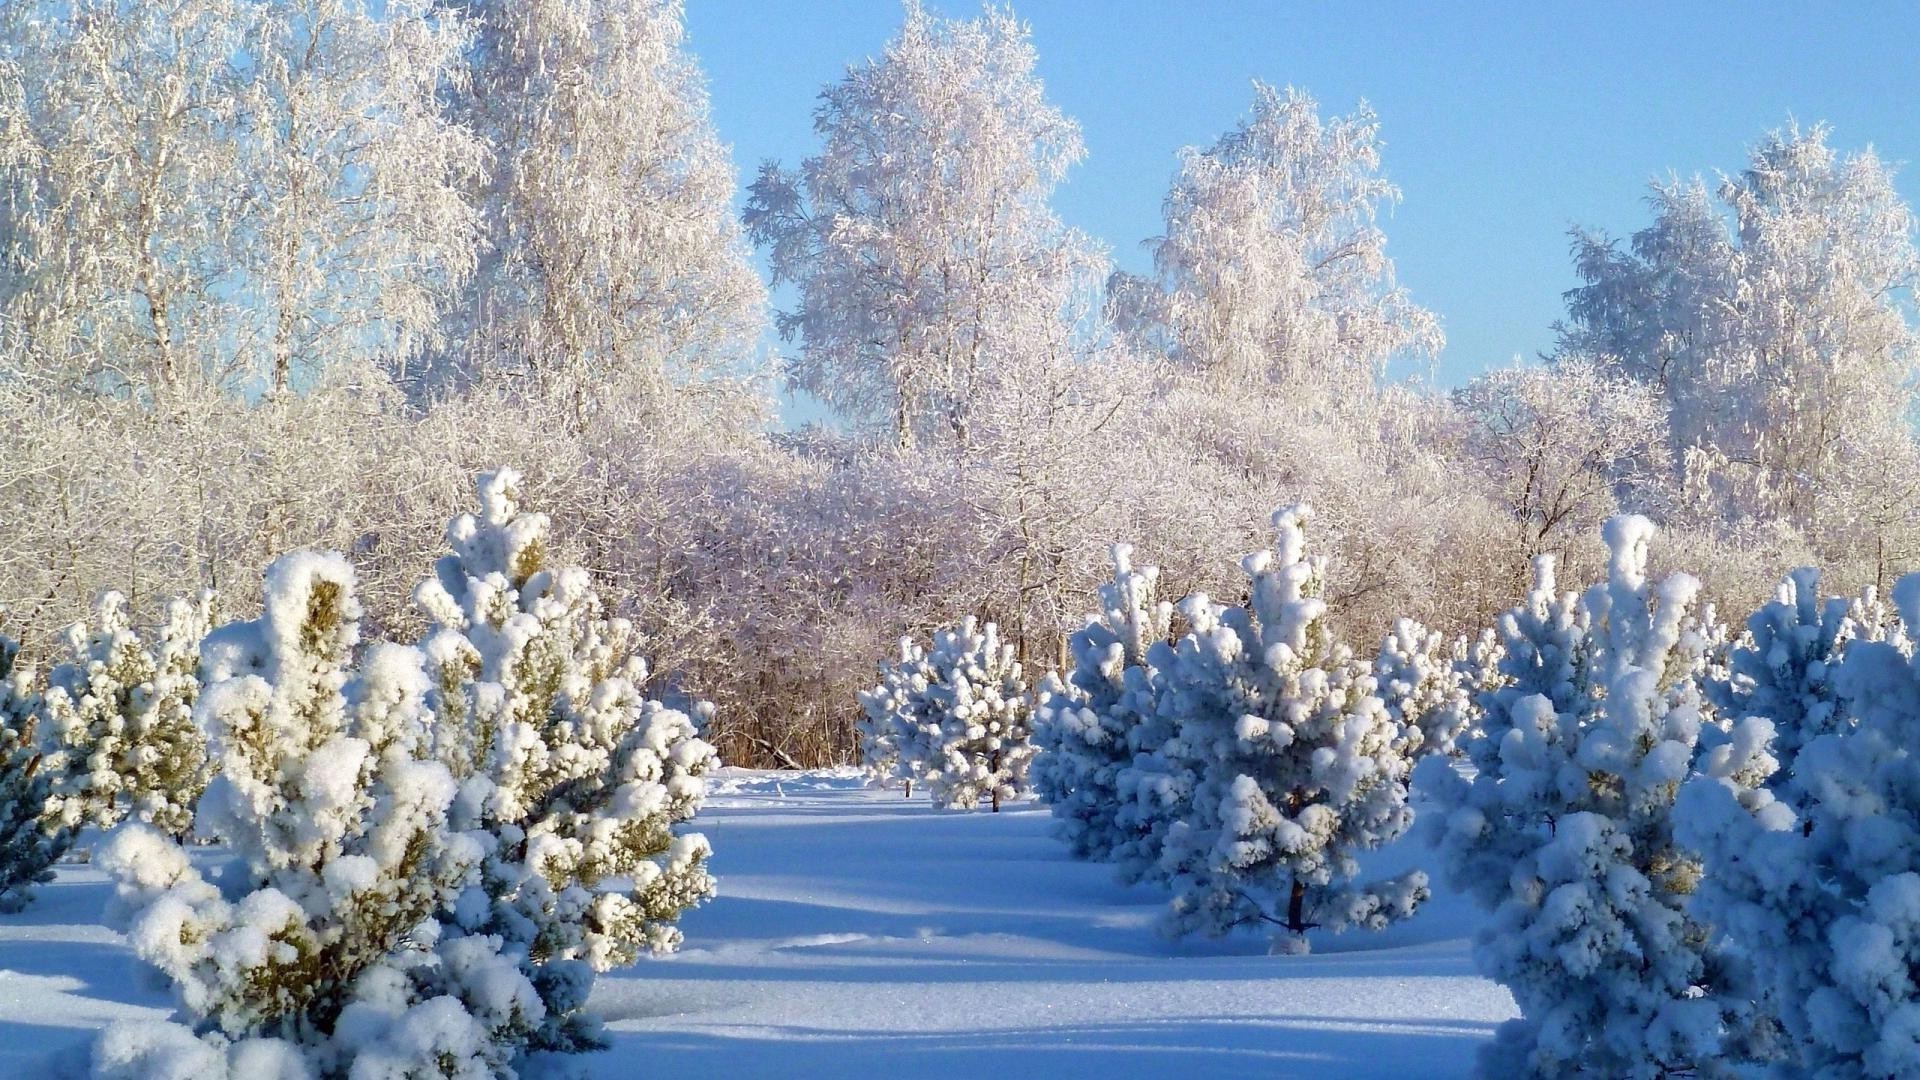 зима снег дерево мороз сезон природа филиал холодная пейзаж замороженные древесины хорошую погоду флора на открытом воздухе погода лед цветок